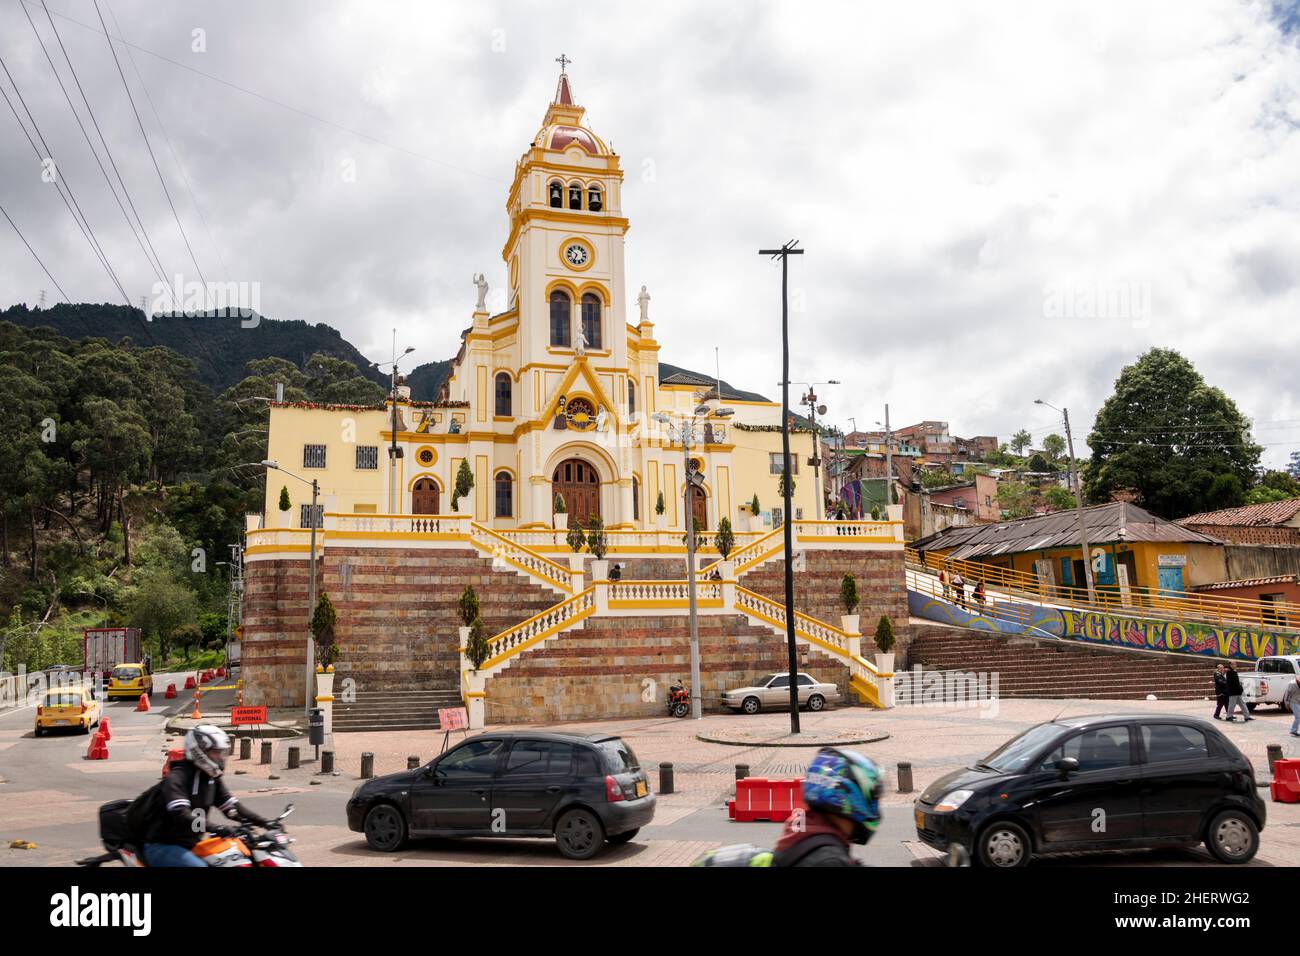 Église Iglesia de Nuestra Señora de Egipto, Bogta, Colombie.Situé en bordure du quartier autrefois célèbre des gangs de Barrio Egipto. Banque D'Images